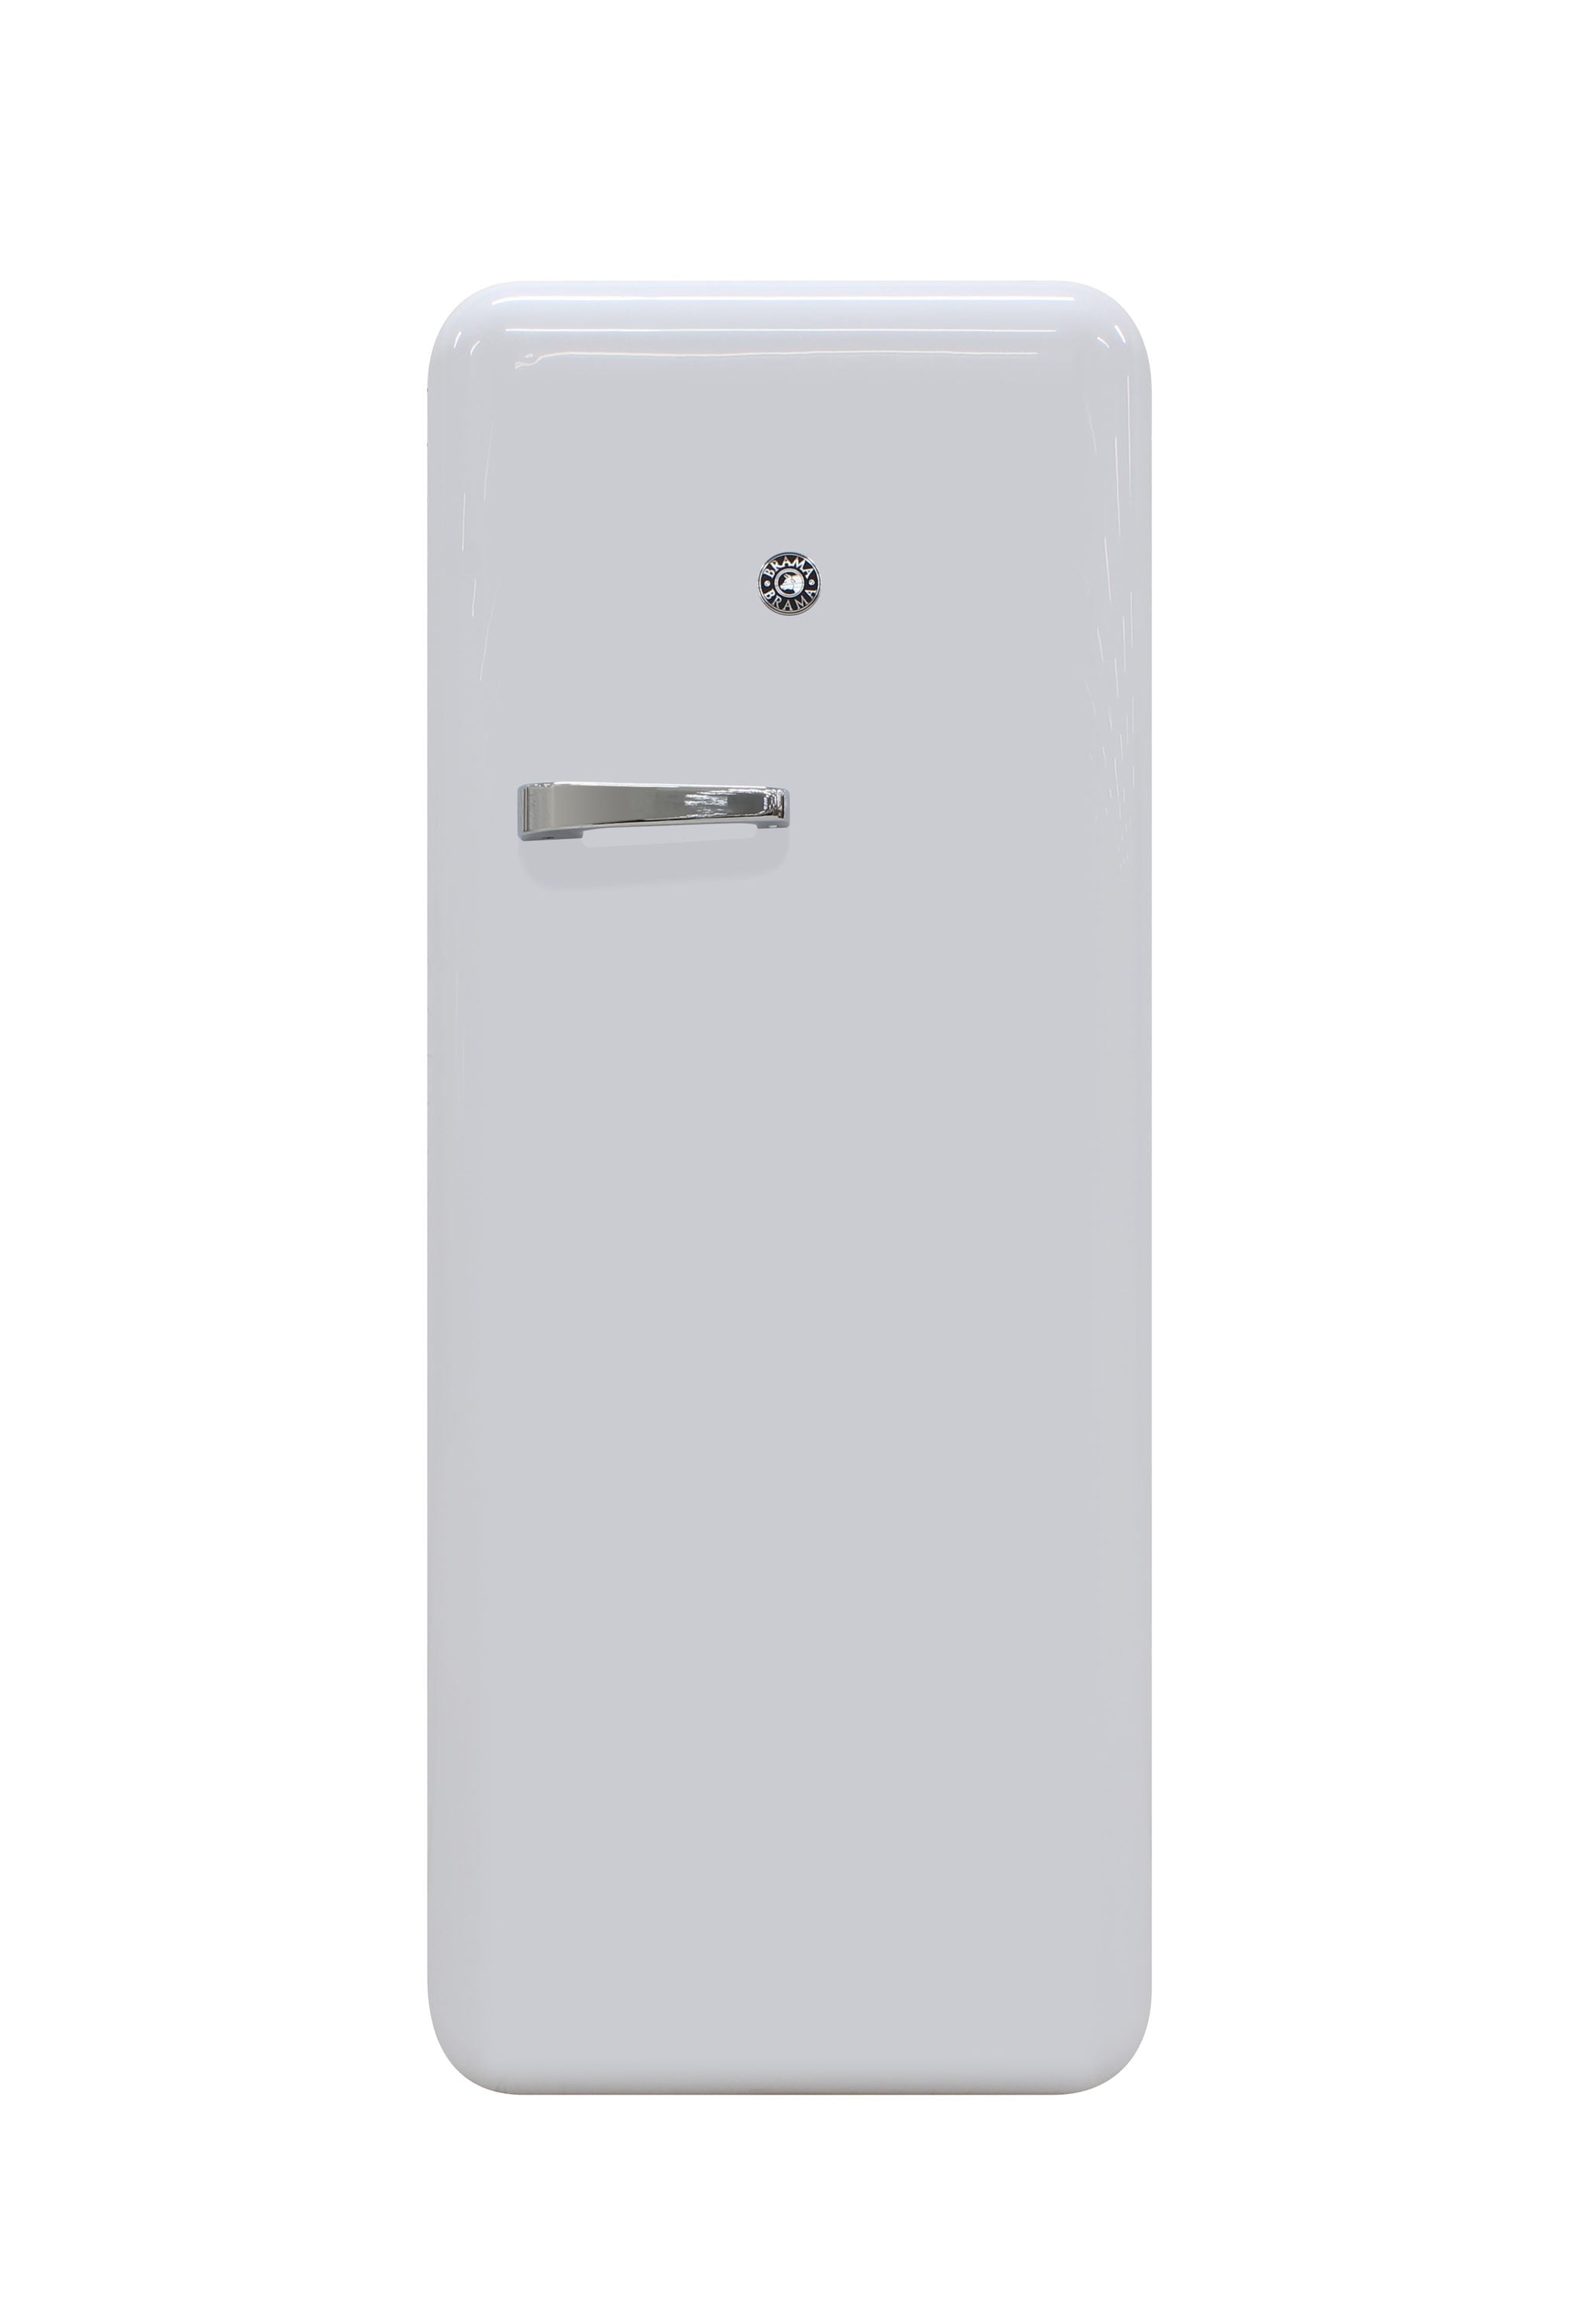 Brama Retro Refrigerator vs. Smeg Refrigerator – Vinotemp